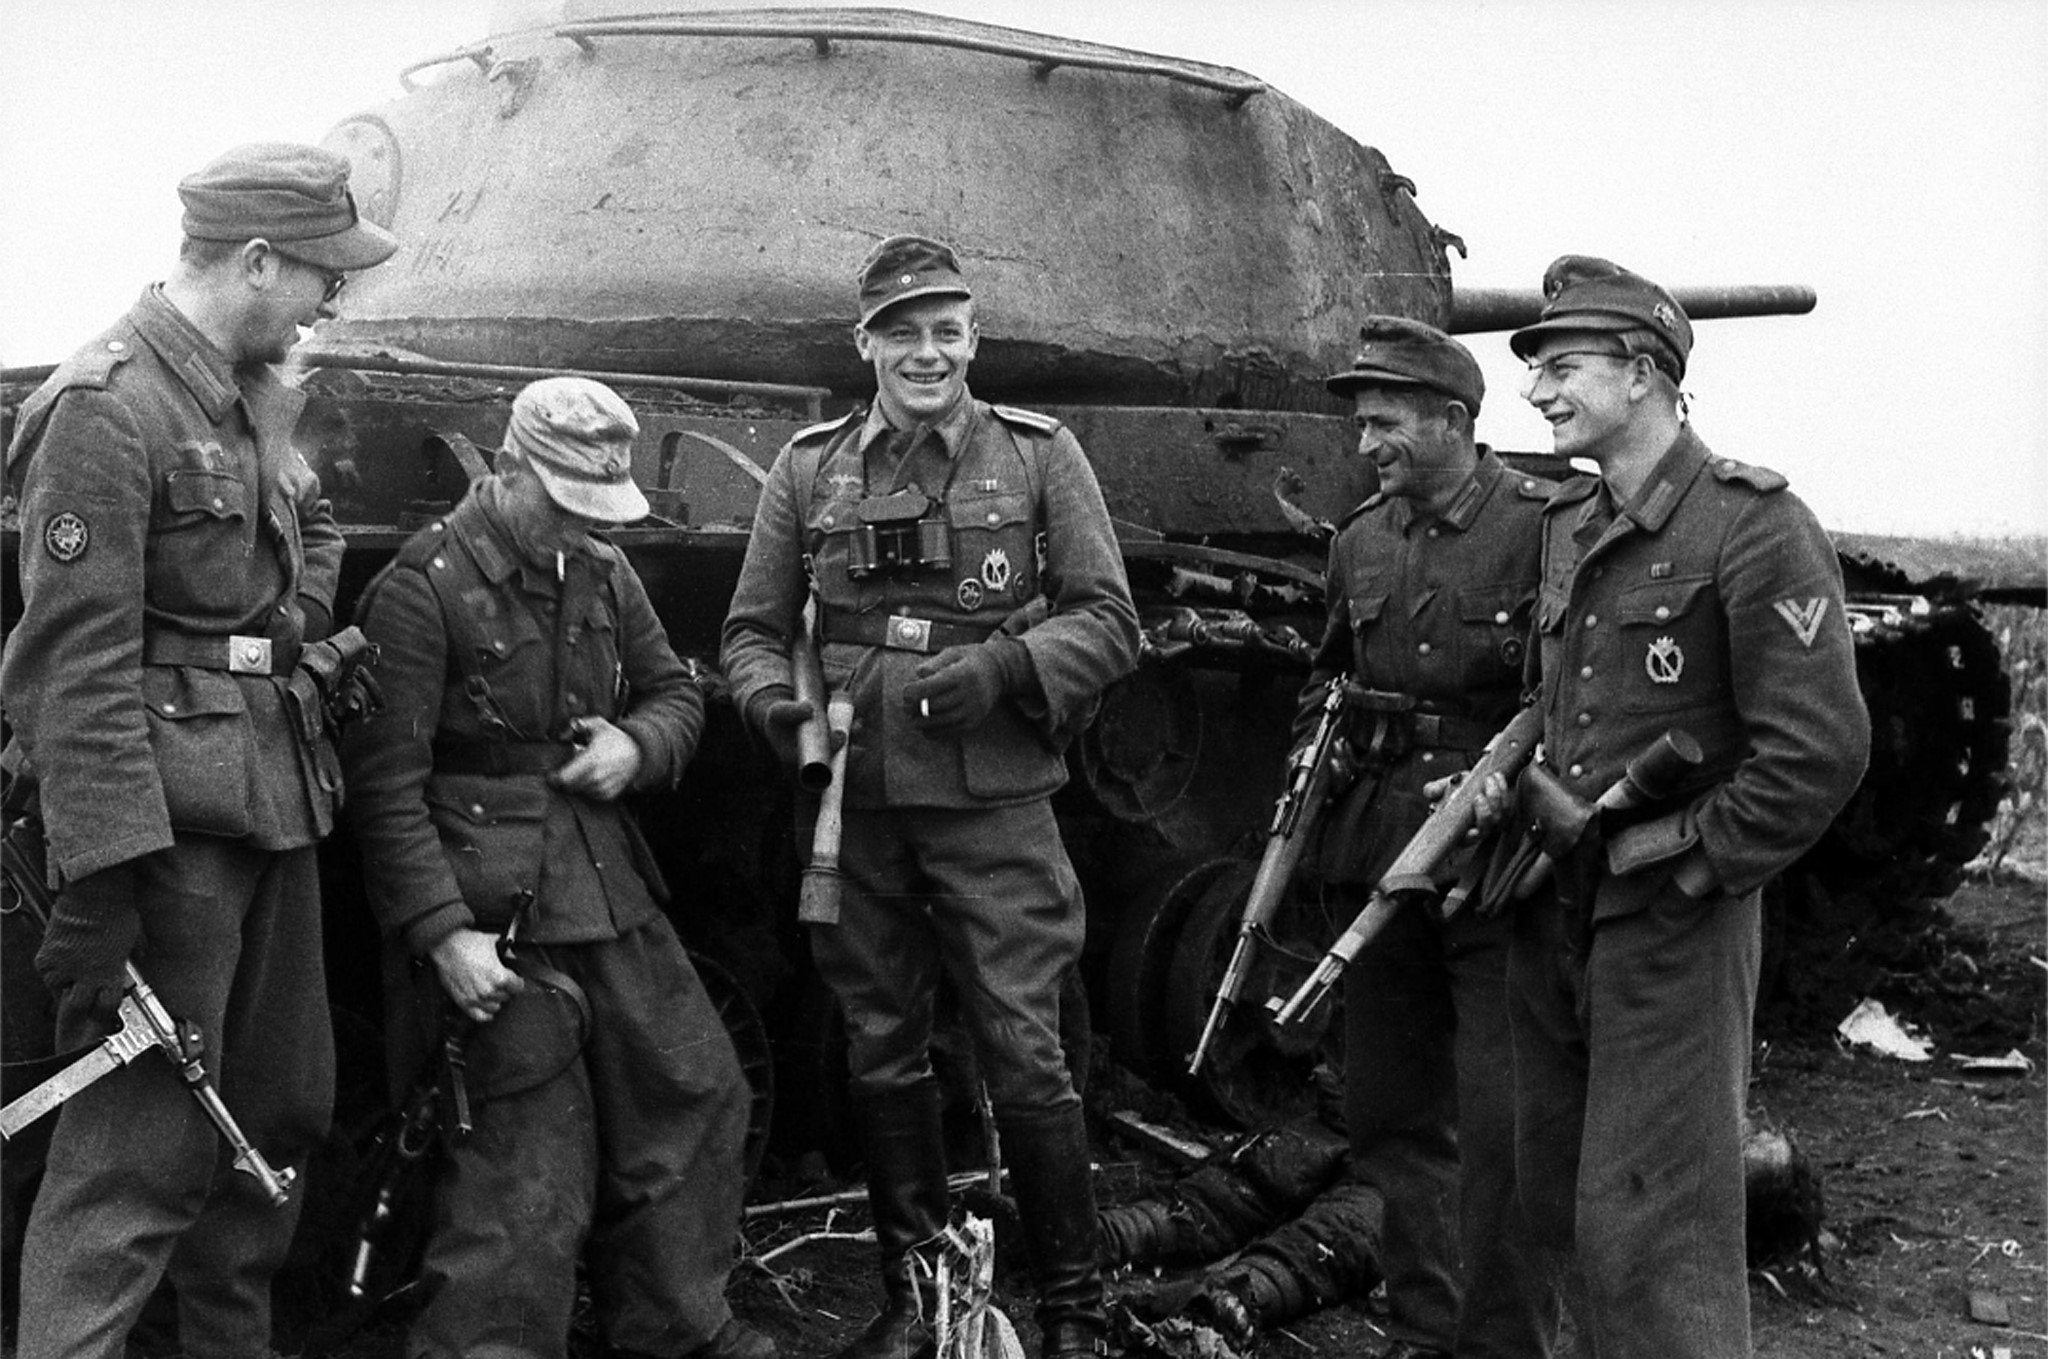 Западный фронт германии второй мировой войны. Солдаты вермахта 1943. Немецкие танкисты 2 мировой. Солдаты вермахта второй мировой войны. Немецкие солдаты СС второй мировой войны.